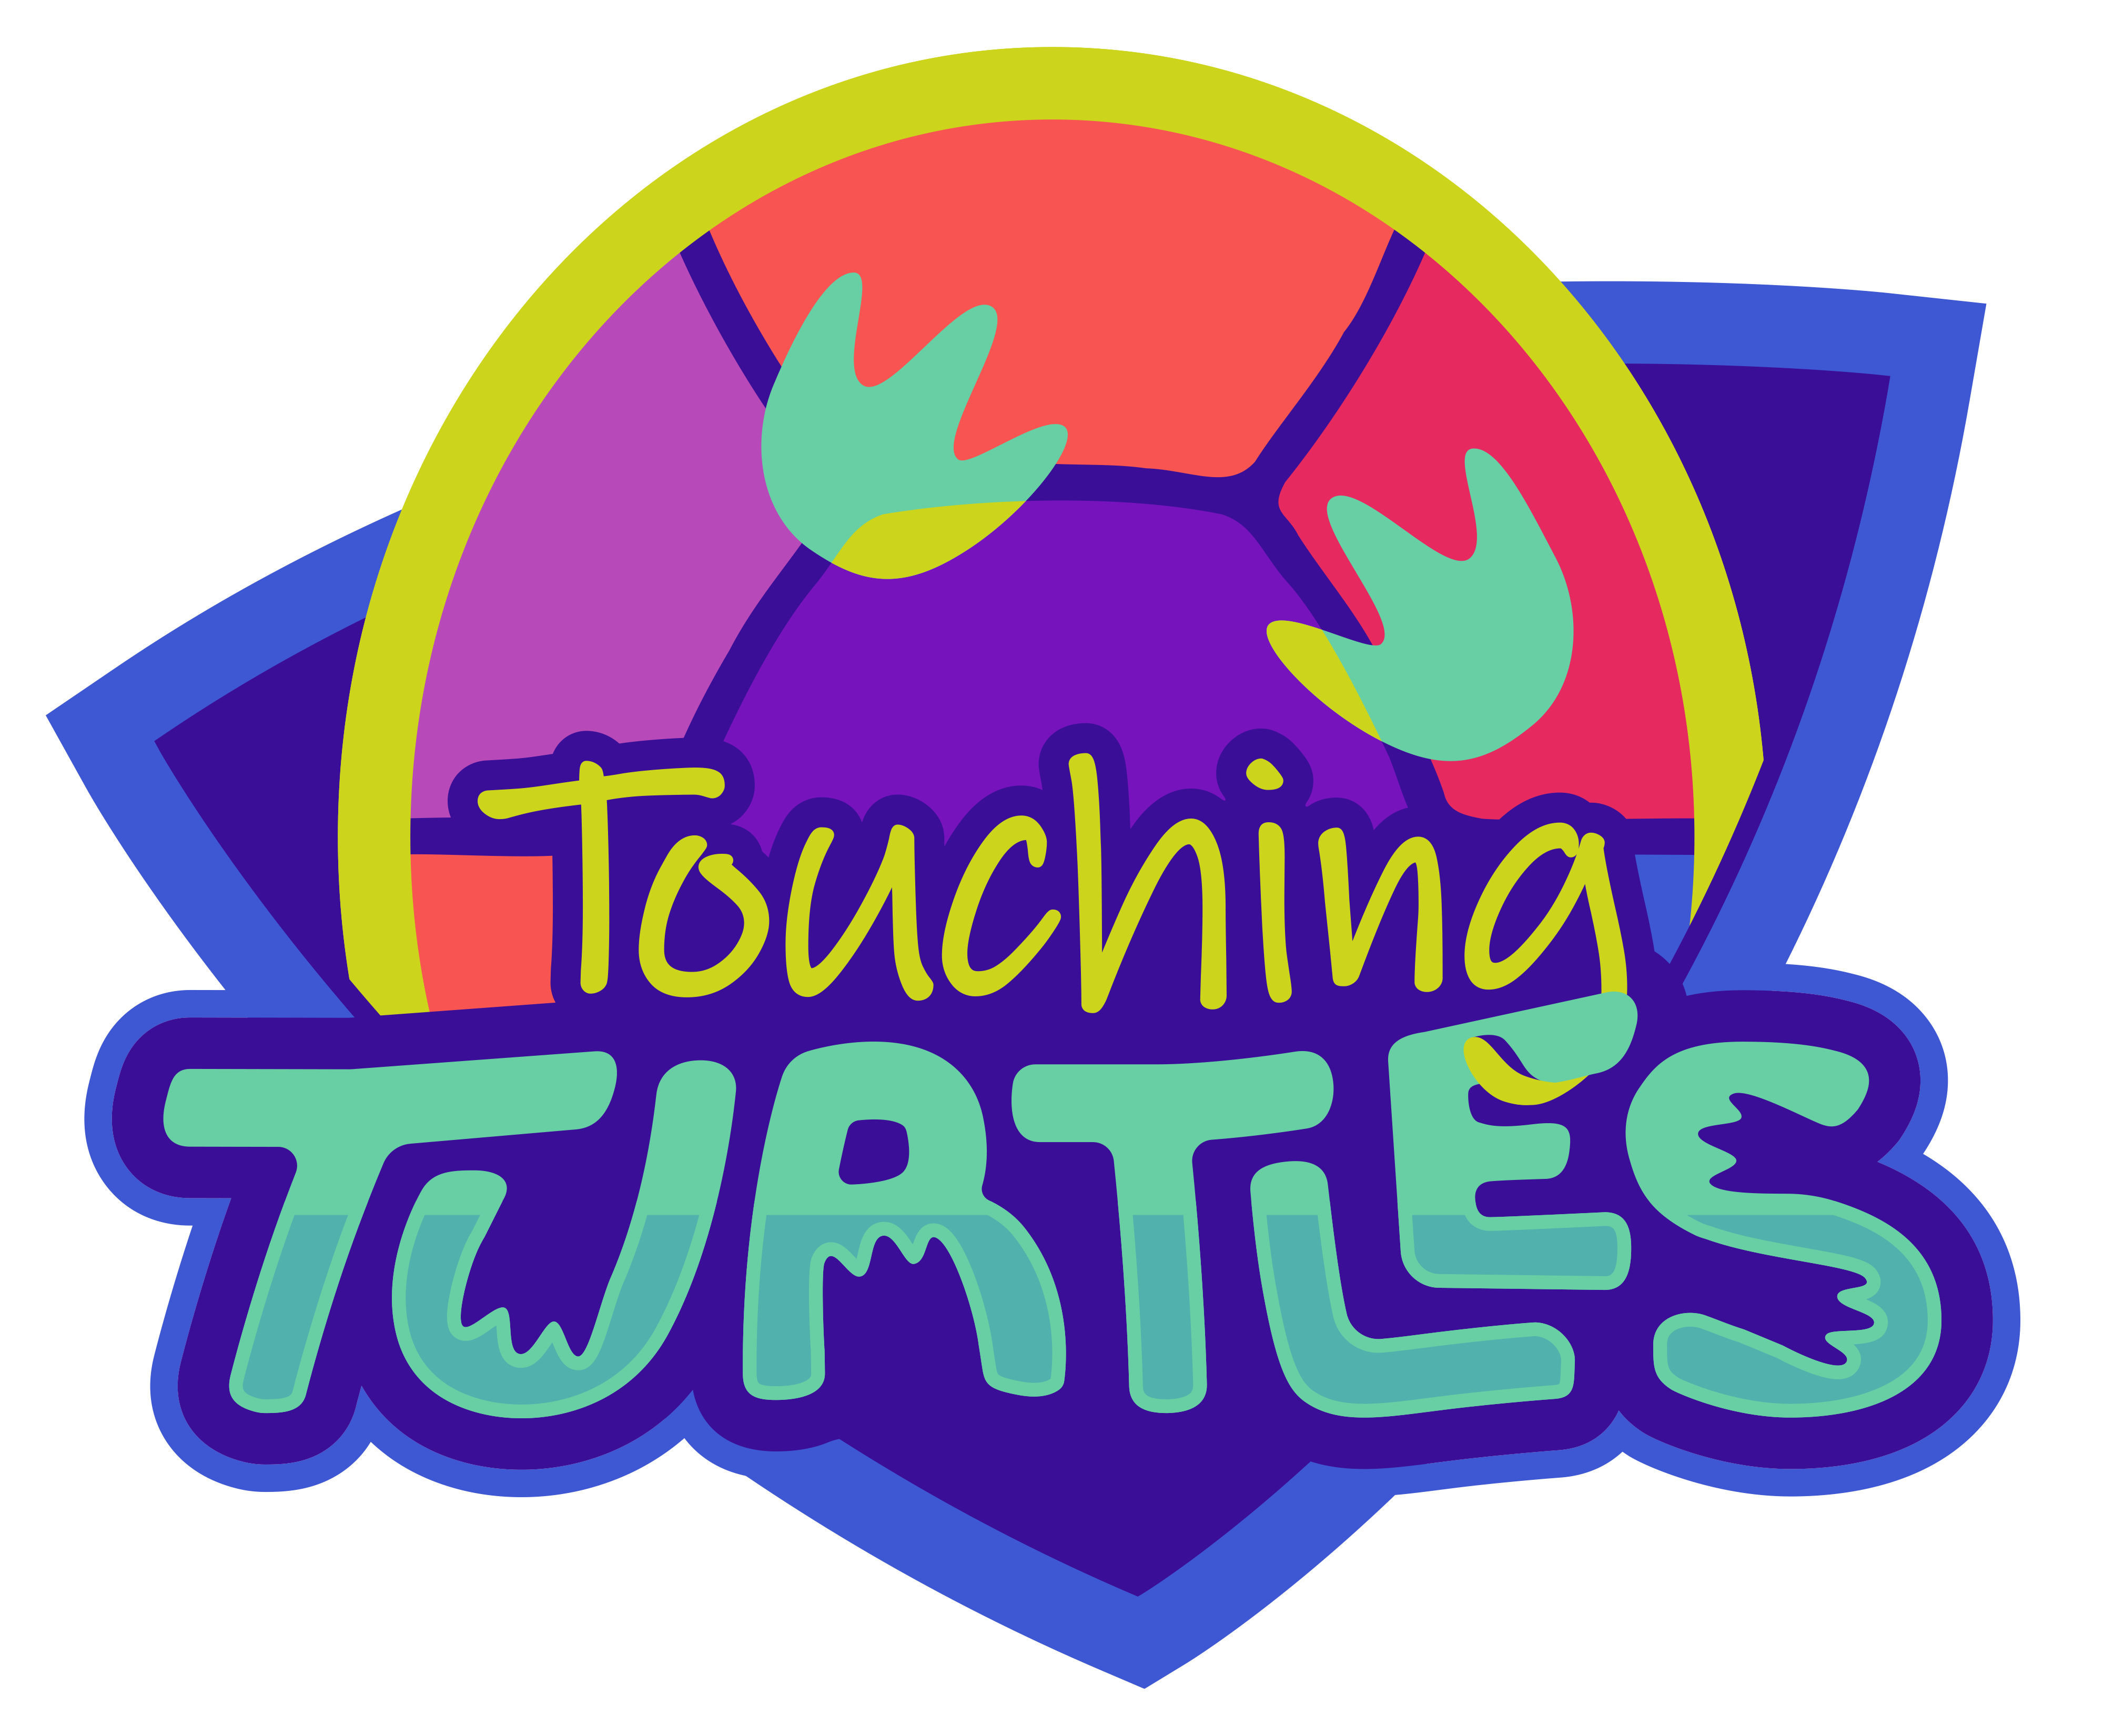 Touching Turtles